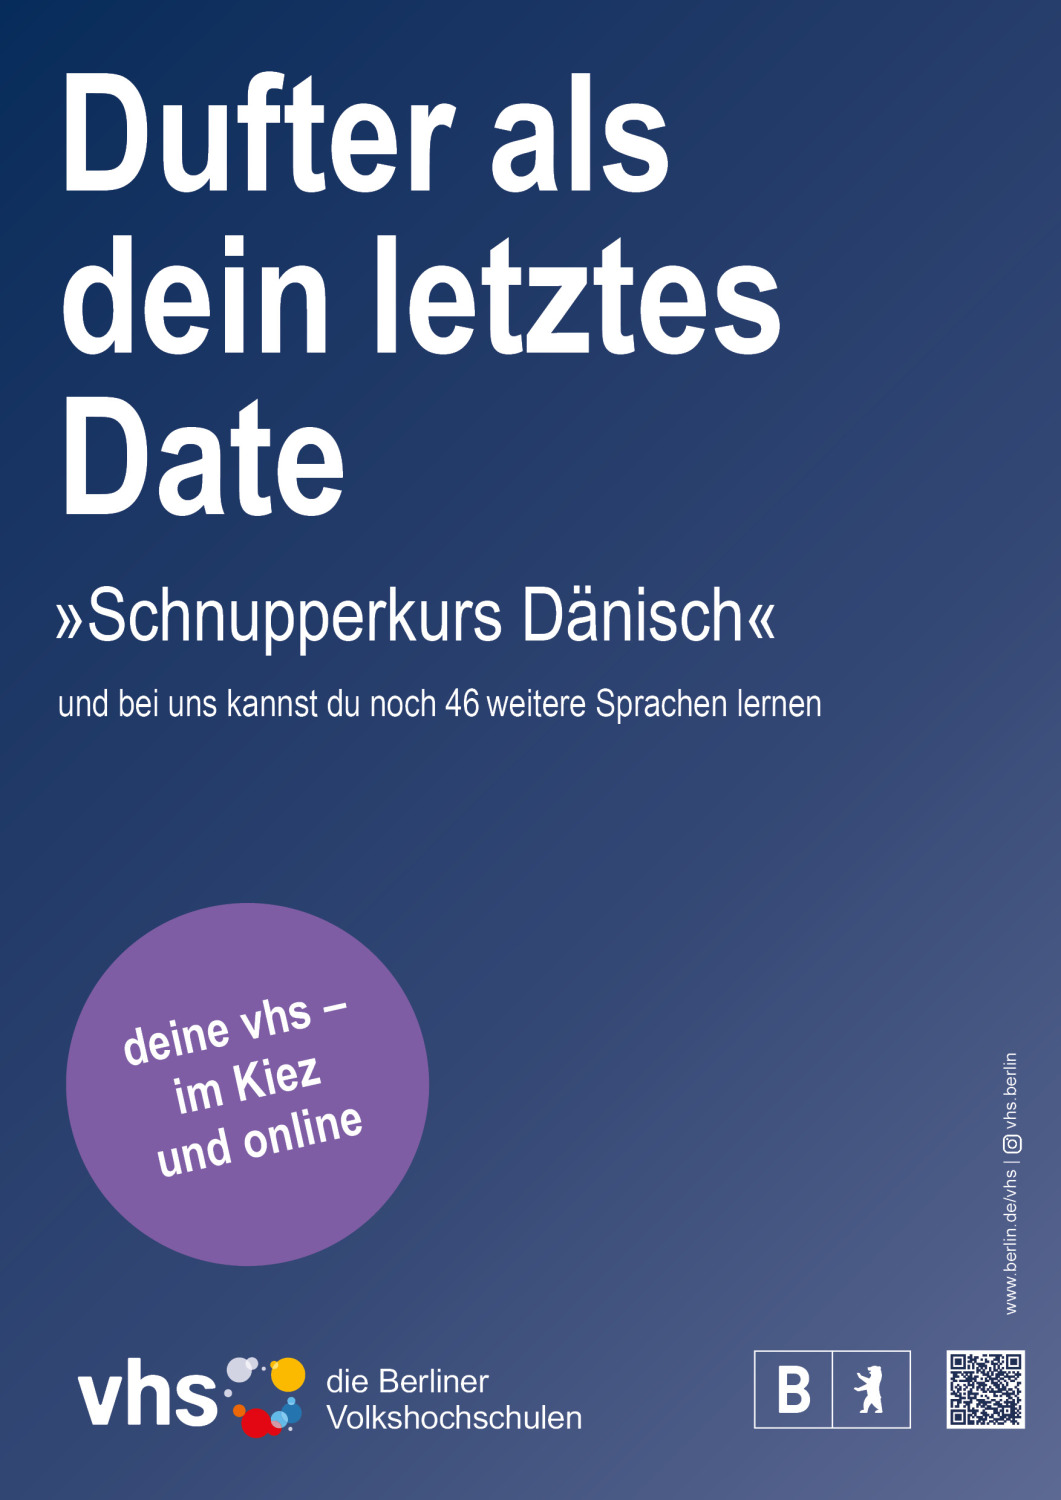 Plakat der Berliner vhs-Kamapage ab 2023 - Dufter als dein letztes Date